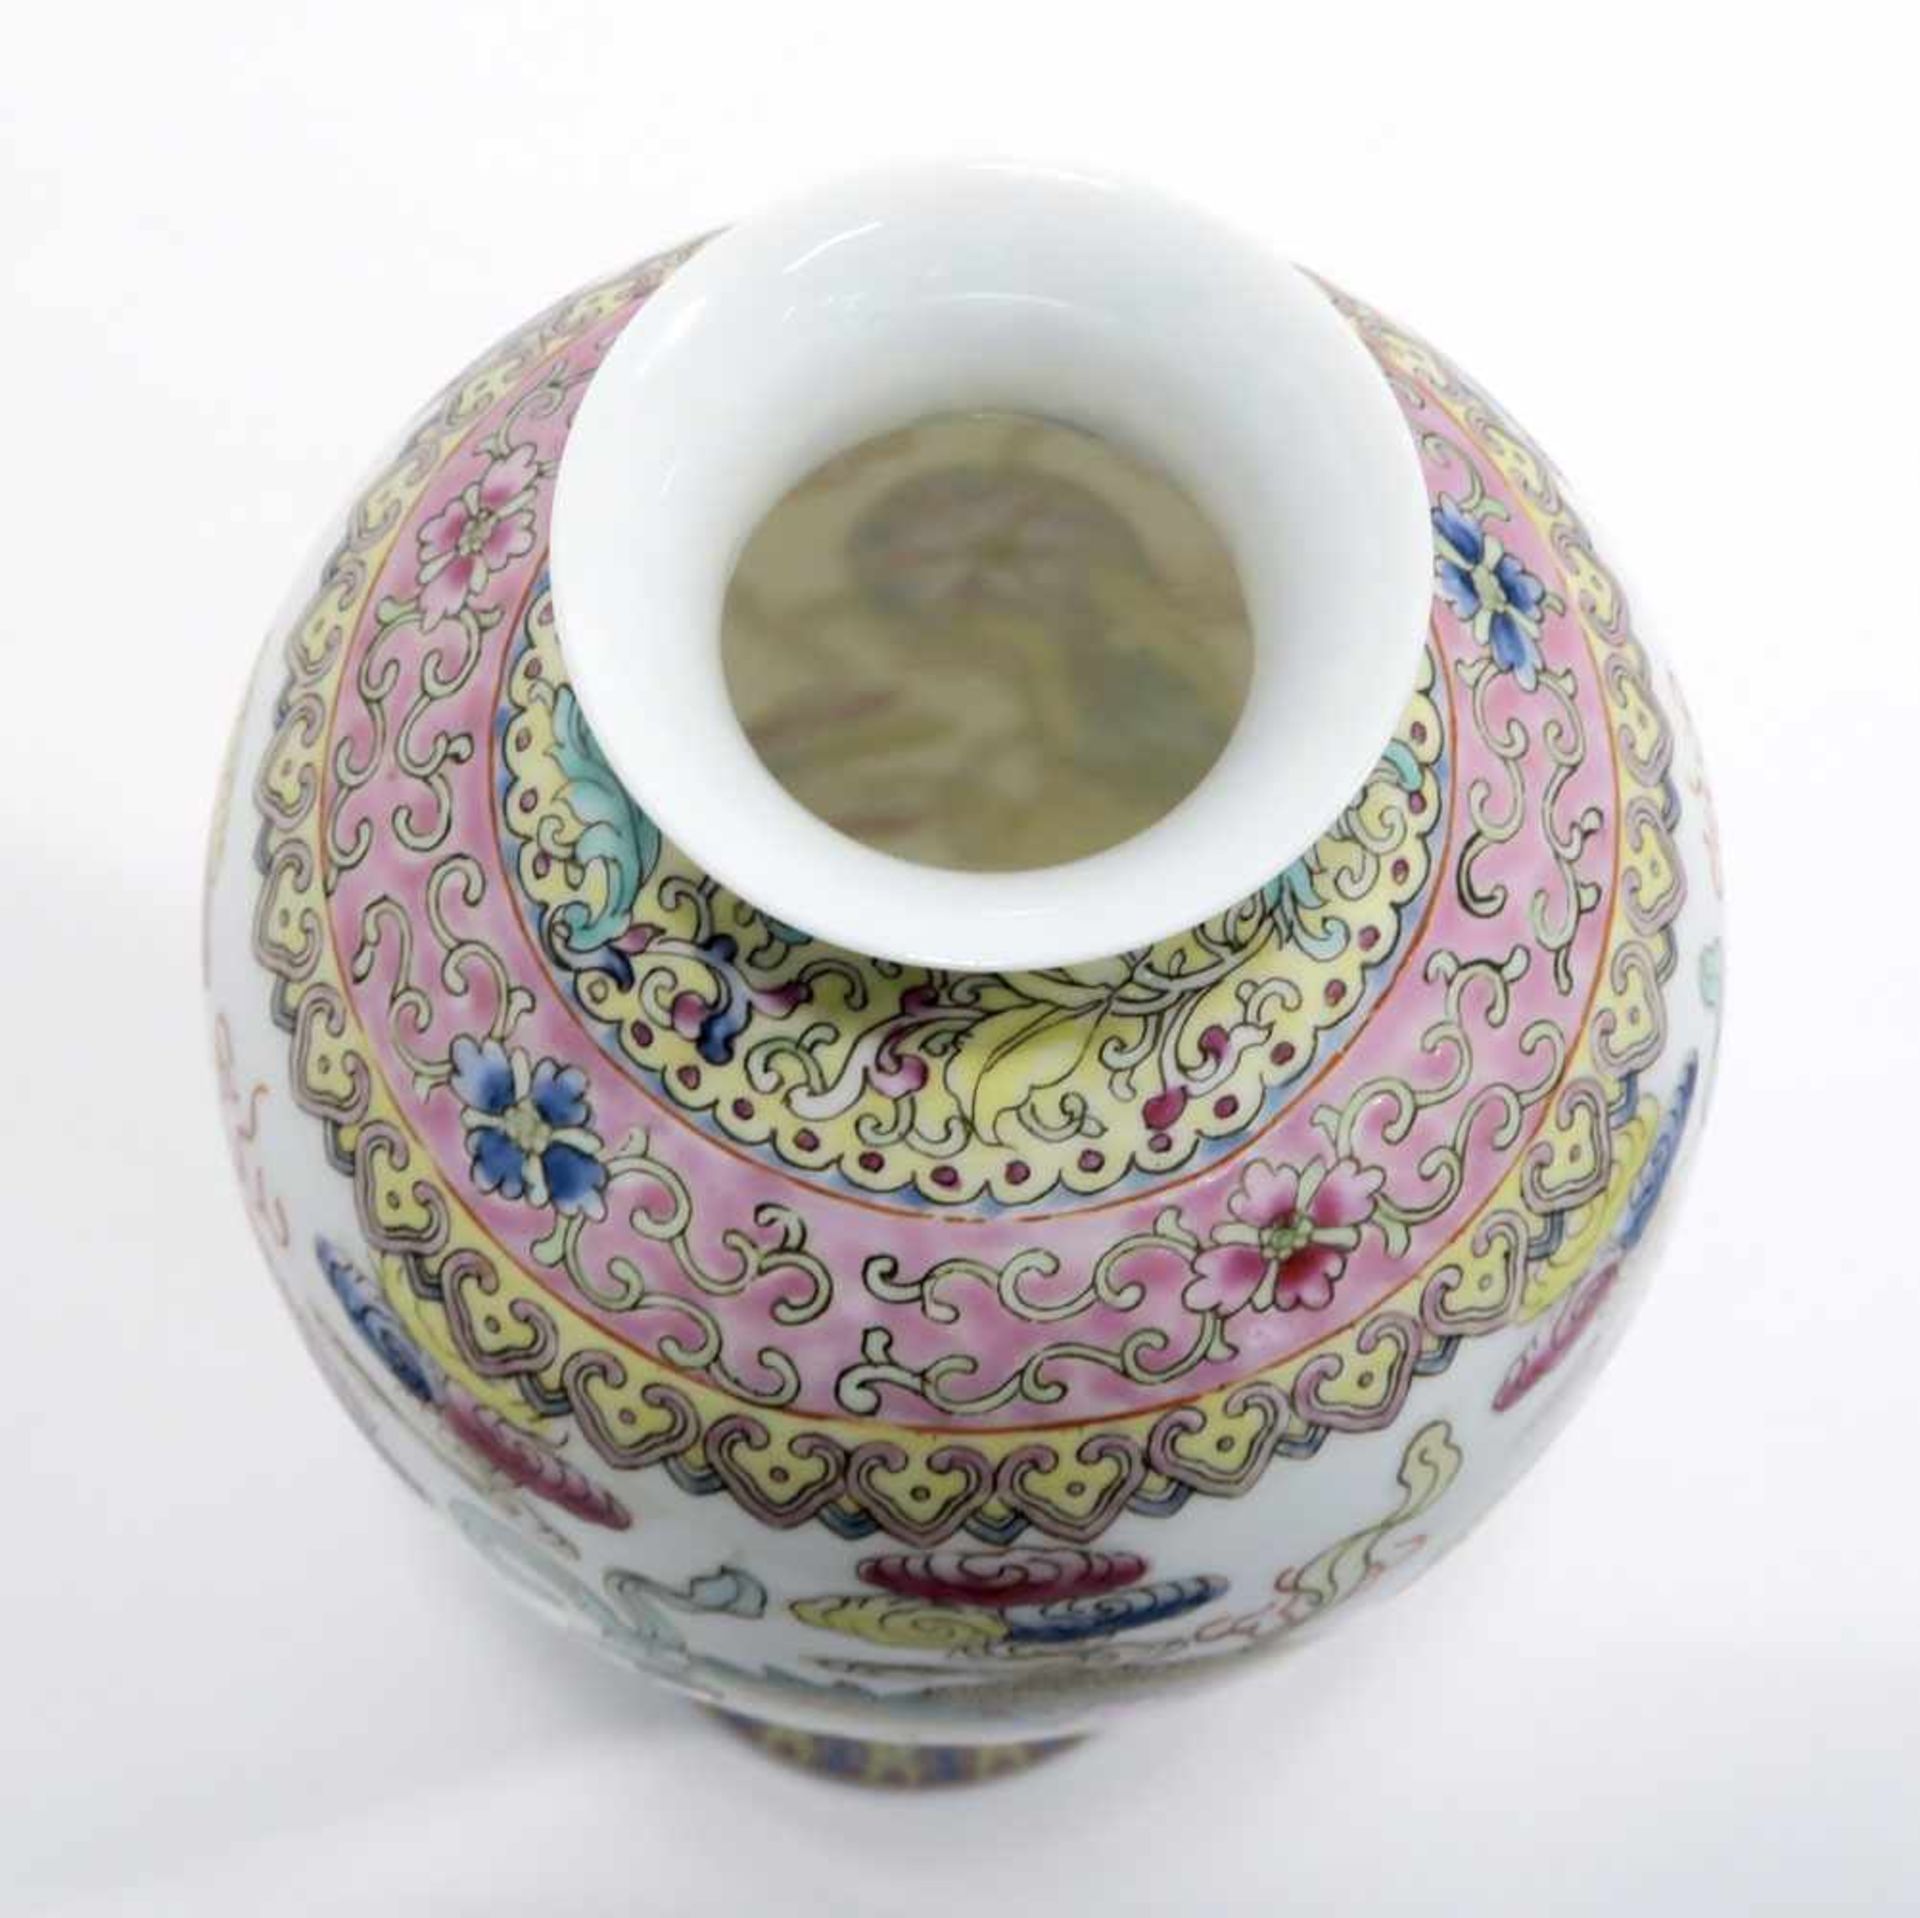 Opiumpfeife / Vase / DeckelgefäßChina. Porzellan, tlw. mit Kupfermontierung. Verschiedene bunte bzw. - Bild 19 aus 21